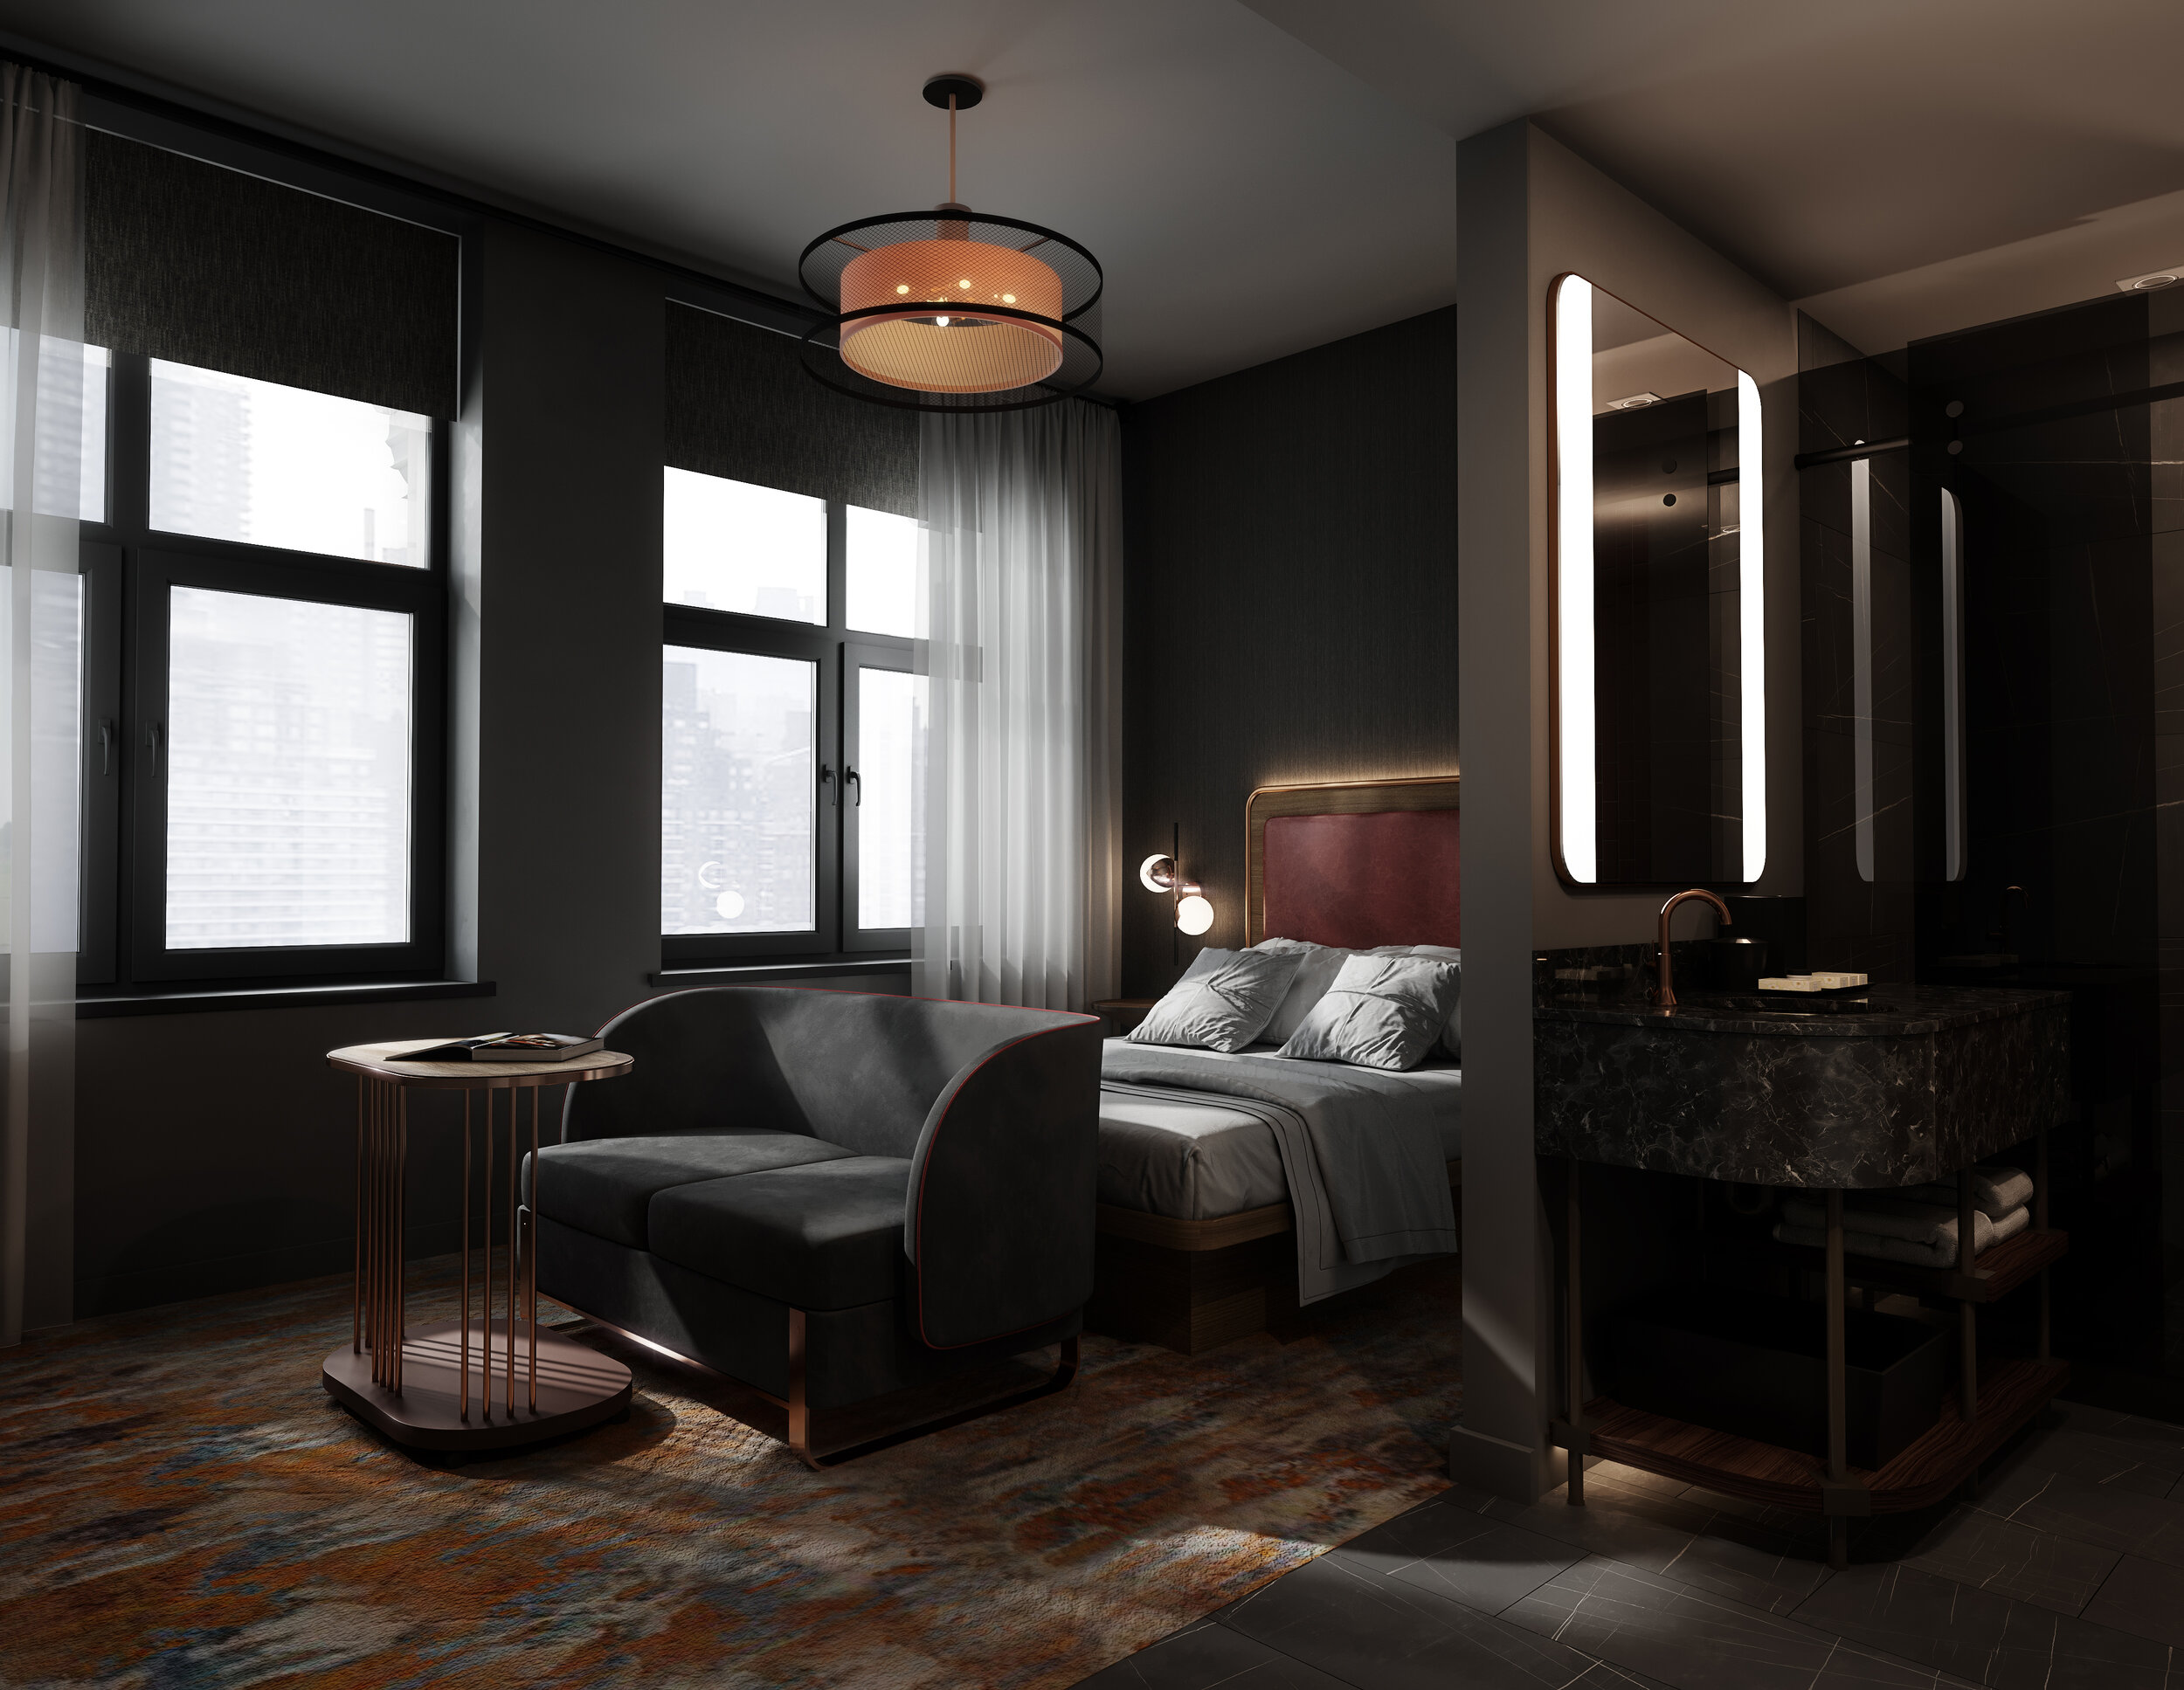  Marriott Bonvoy - Industrialist Hotel Interior 3D Rendering by Azeez Bakare Studios 